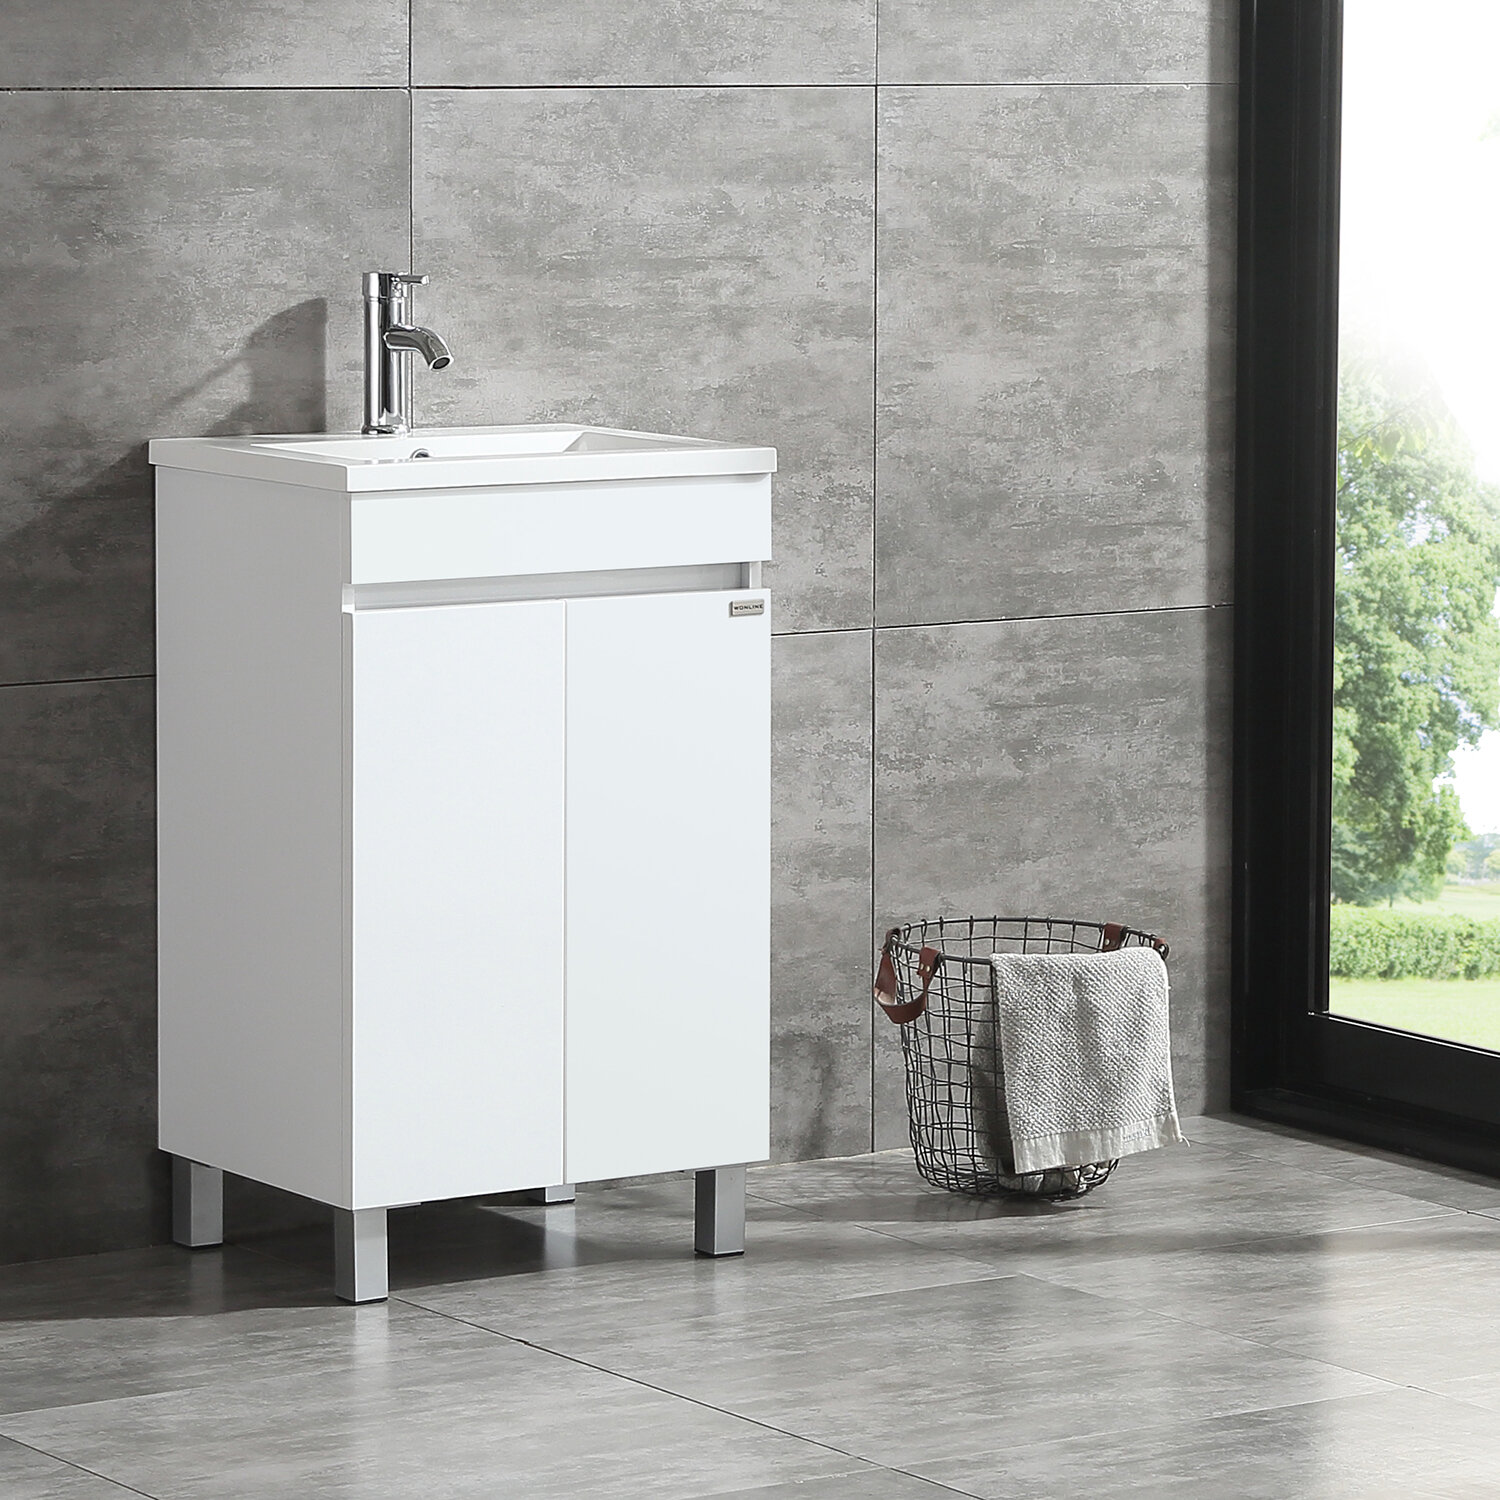 Wonline 20 White Single Wood Bathroom Vanity Cabinet Reviews